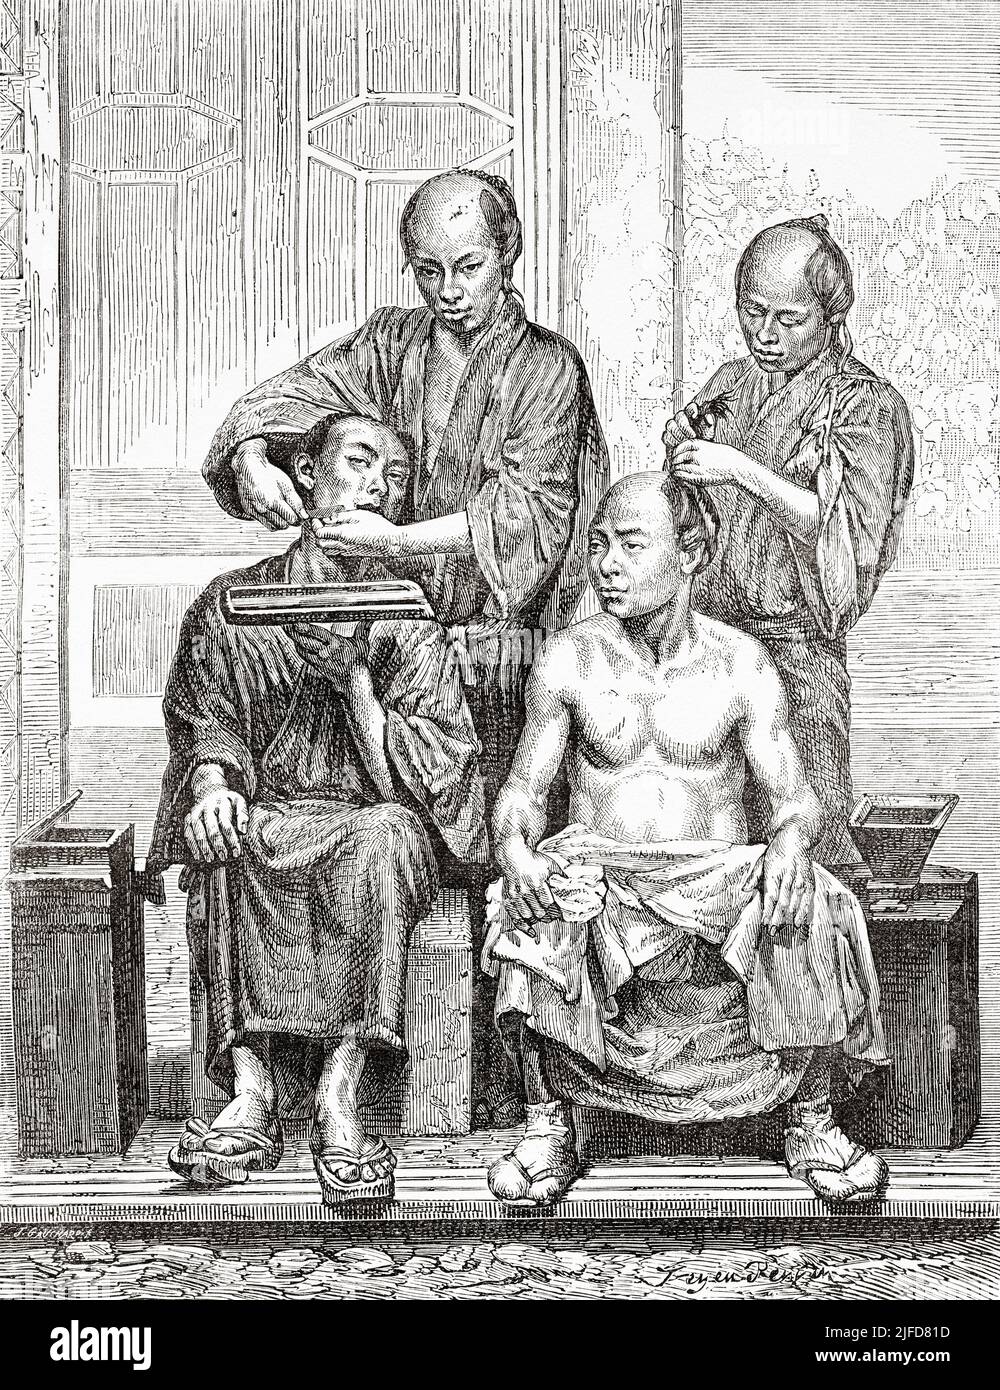 Barbiers japonais, Tokyo. Japon, Asie. Voyage au Japon par aime Humbert 1863-1864 depuis le Tour du monde 1867 Banque D'Images